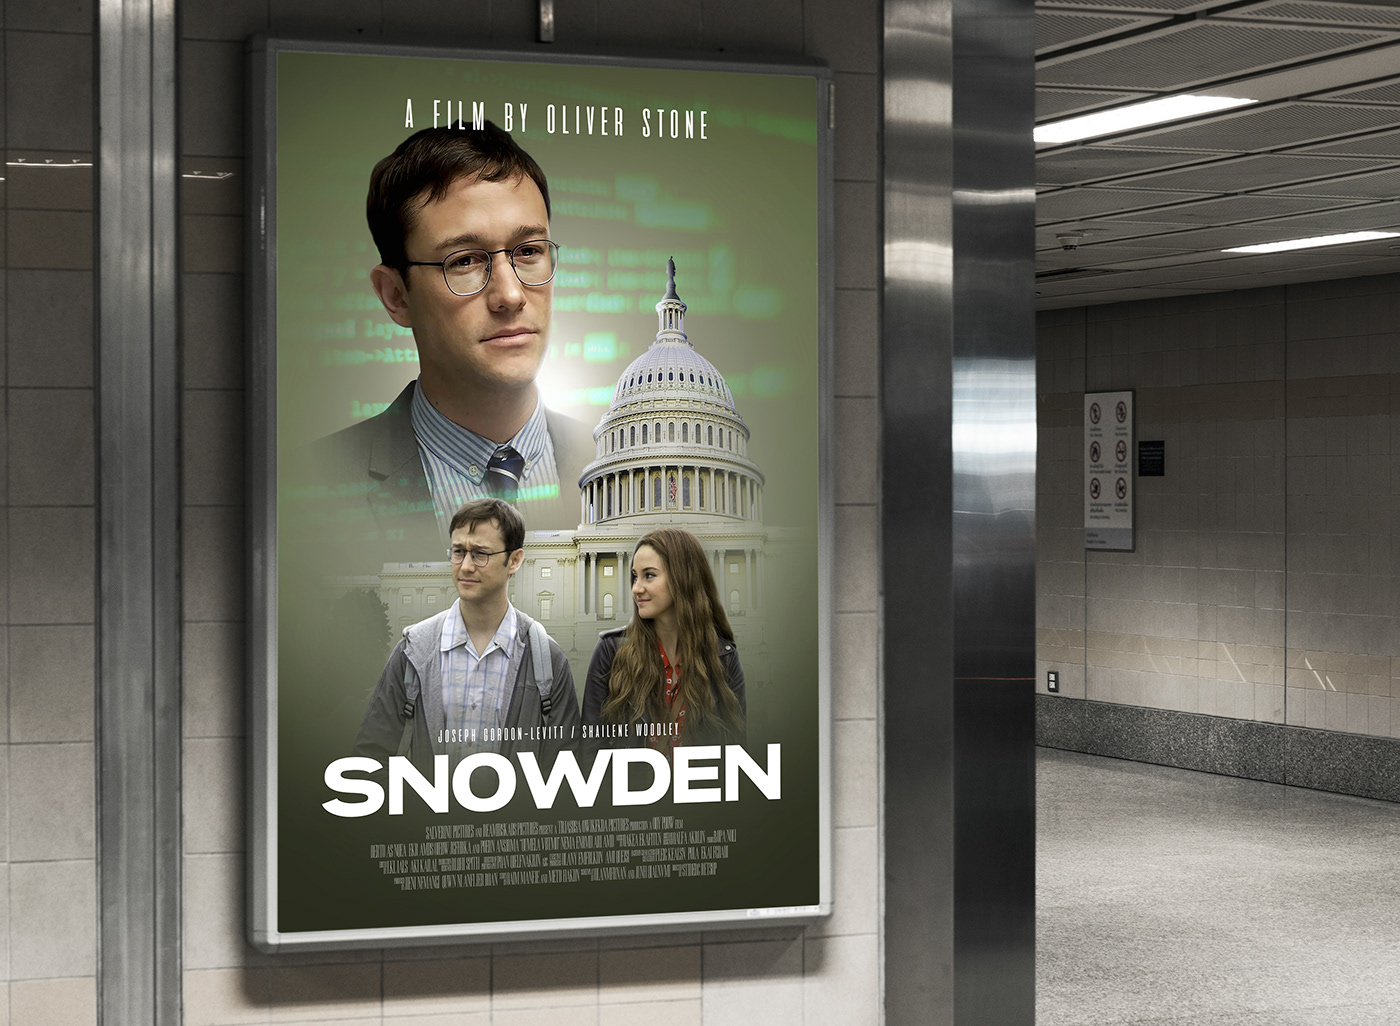 manipulation movieposter movieposterdesign photoshop poster posterdesign snowden